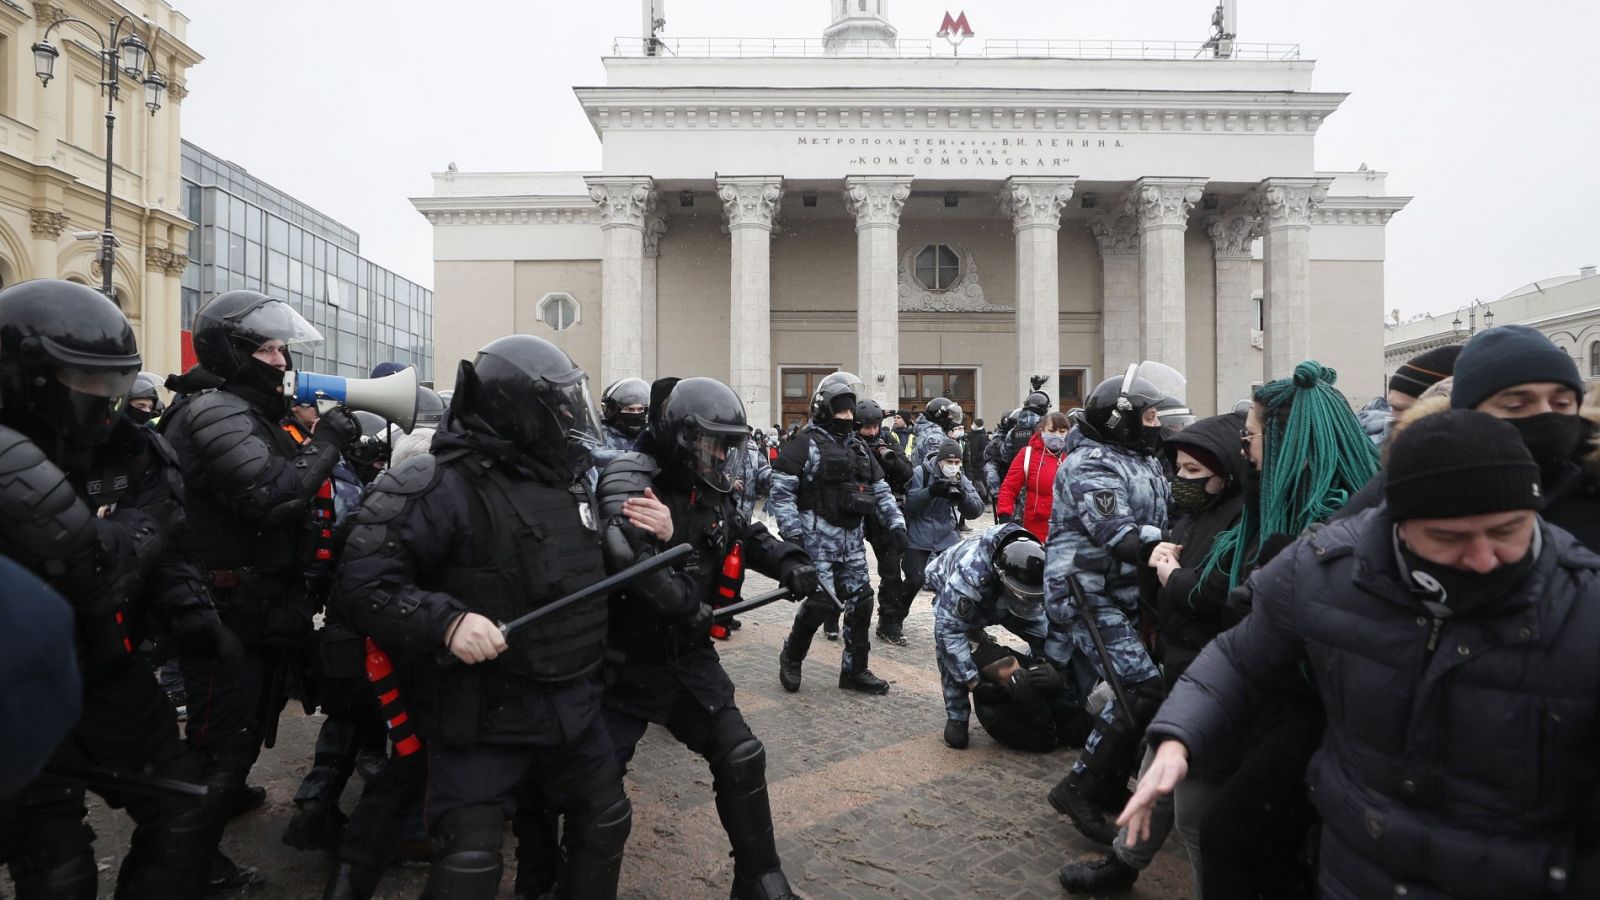 Gran despliegue policial en las principales ciudades de Rusia para atajar las protestas en favor de Navalny